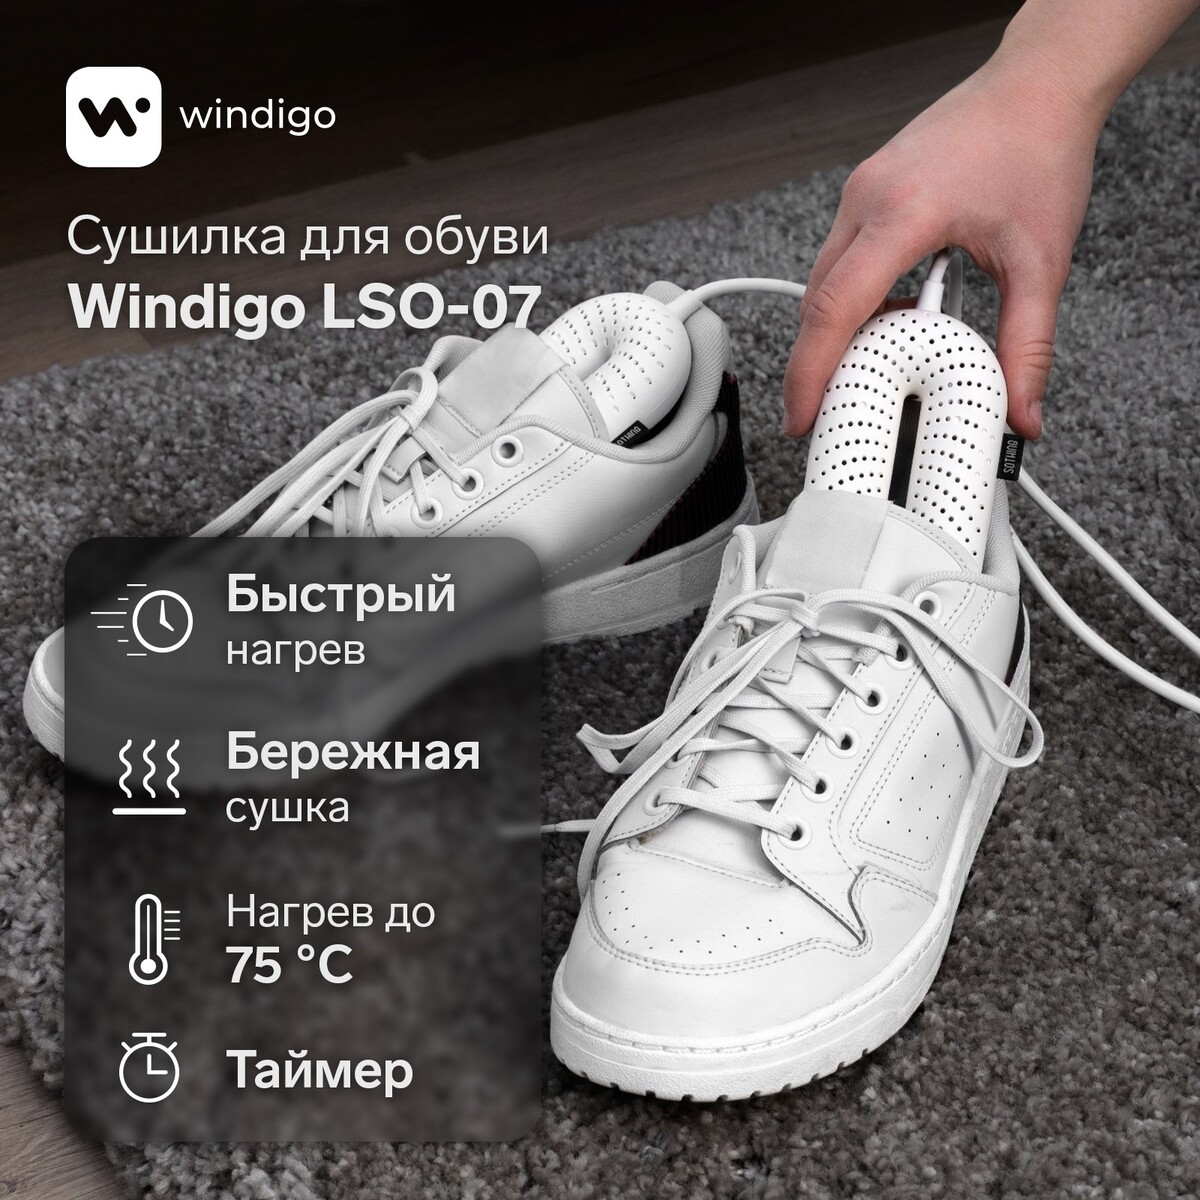 Сушилка для обуви windigo lso-07, 17 см, 20 вт, индикатор, таймер 3/6/9 часов, белая сушилка для обуви windigo lso 04 17 см 20 вт индикатор синяя